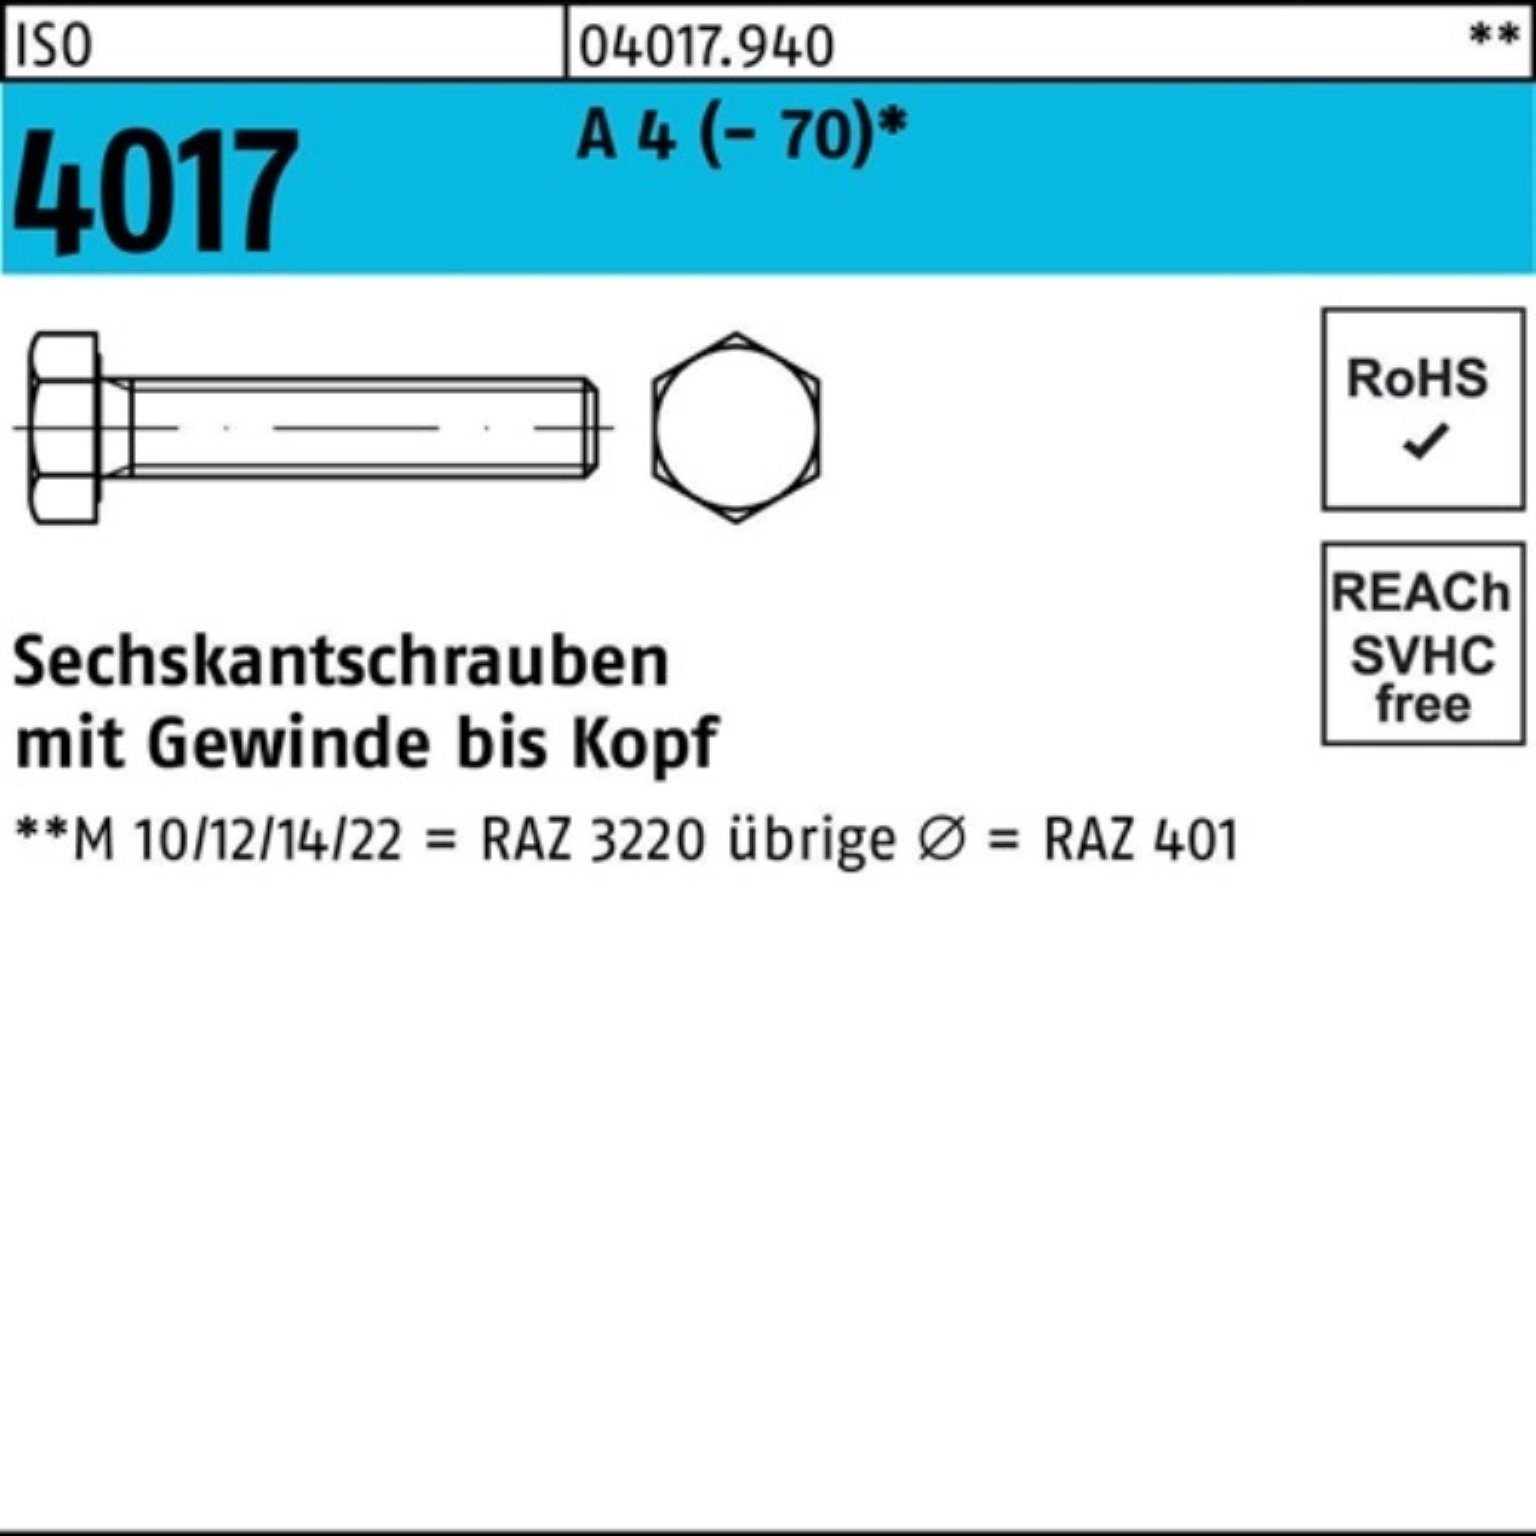 Bufab Sechskantschraube 100er Pack Sechskantschraube ISO 4017 VG M10x 70 A 4 (70) 100 Stück